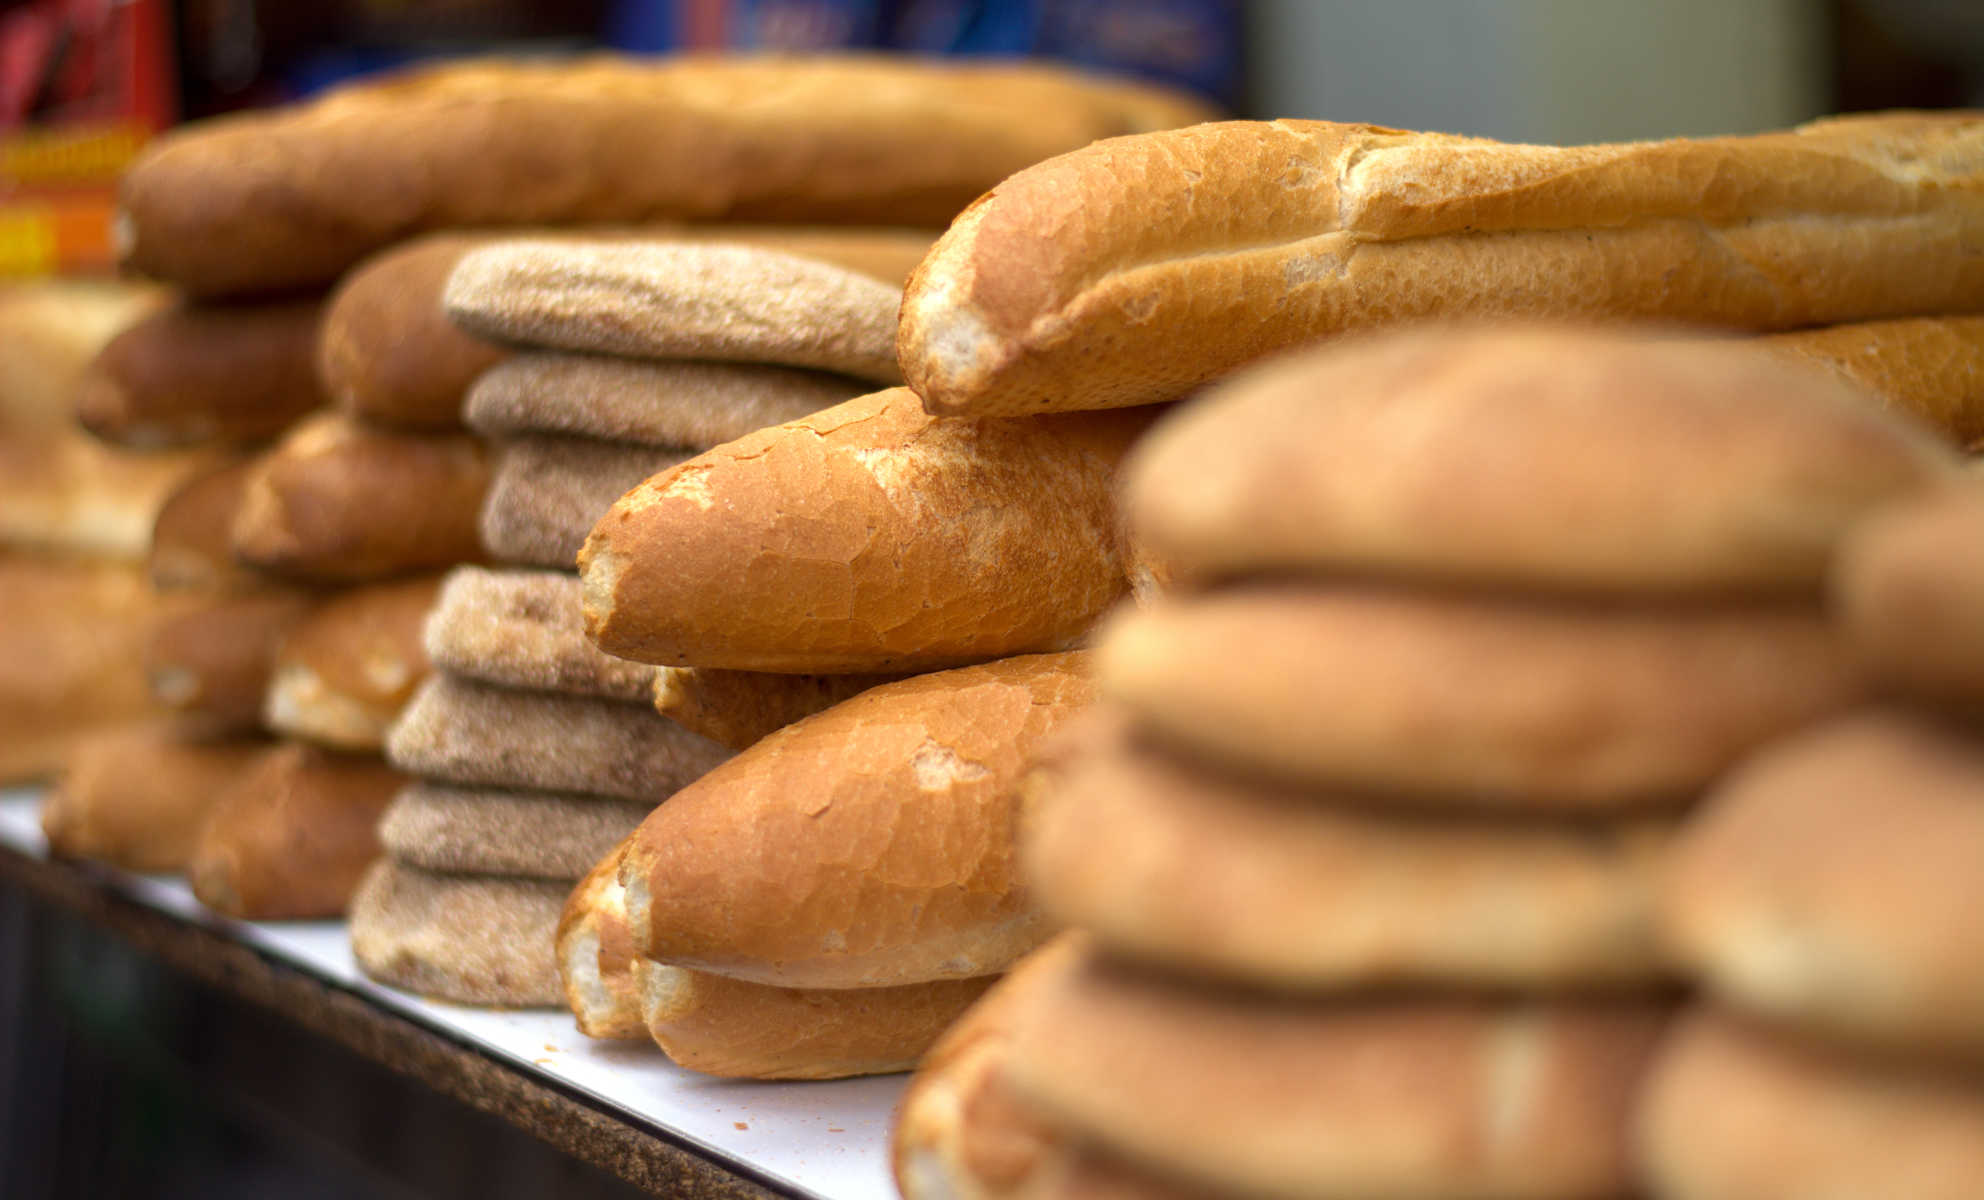 بعد تداول خبر الزيادة في الخبز … وزارة الاقتصاد تؤكد :” سعر الخبز العادي لم يتغير ويبقى في 1.20 درهم ” =بلاغ=